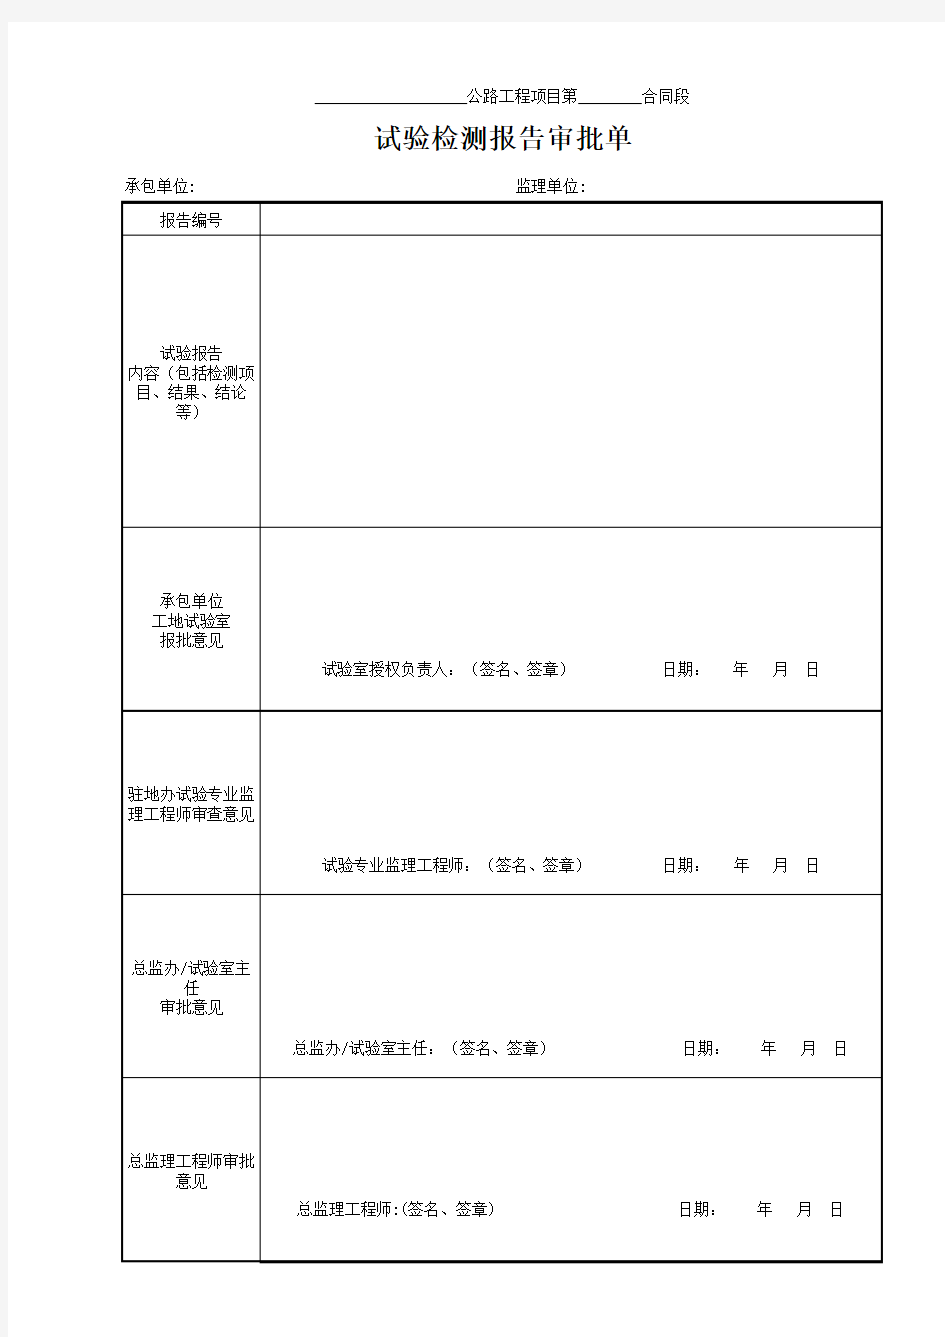 云南省公路工程建设用表标准化指南(试行版)18审批及格式表格